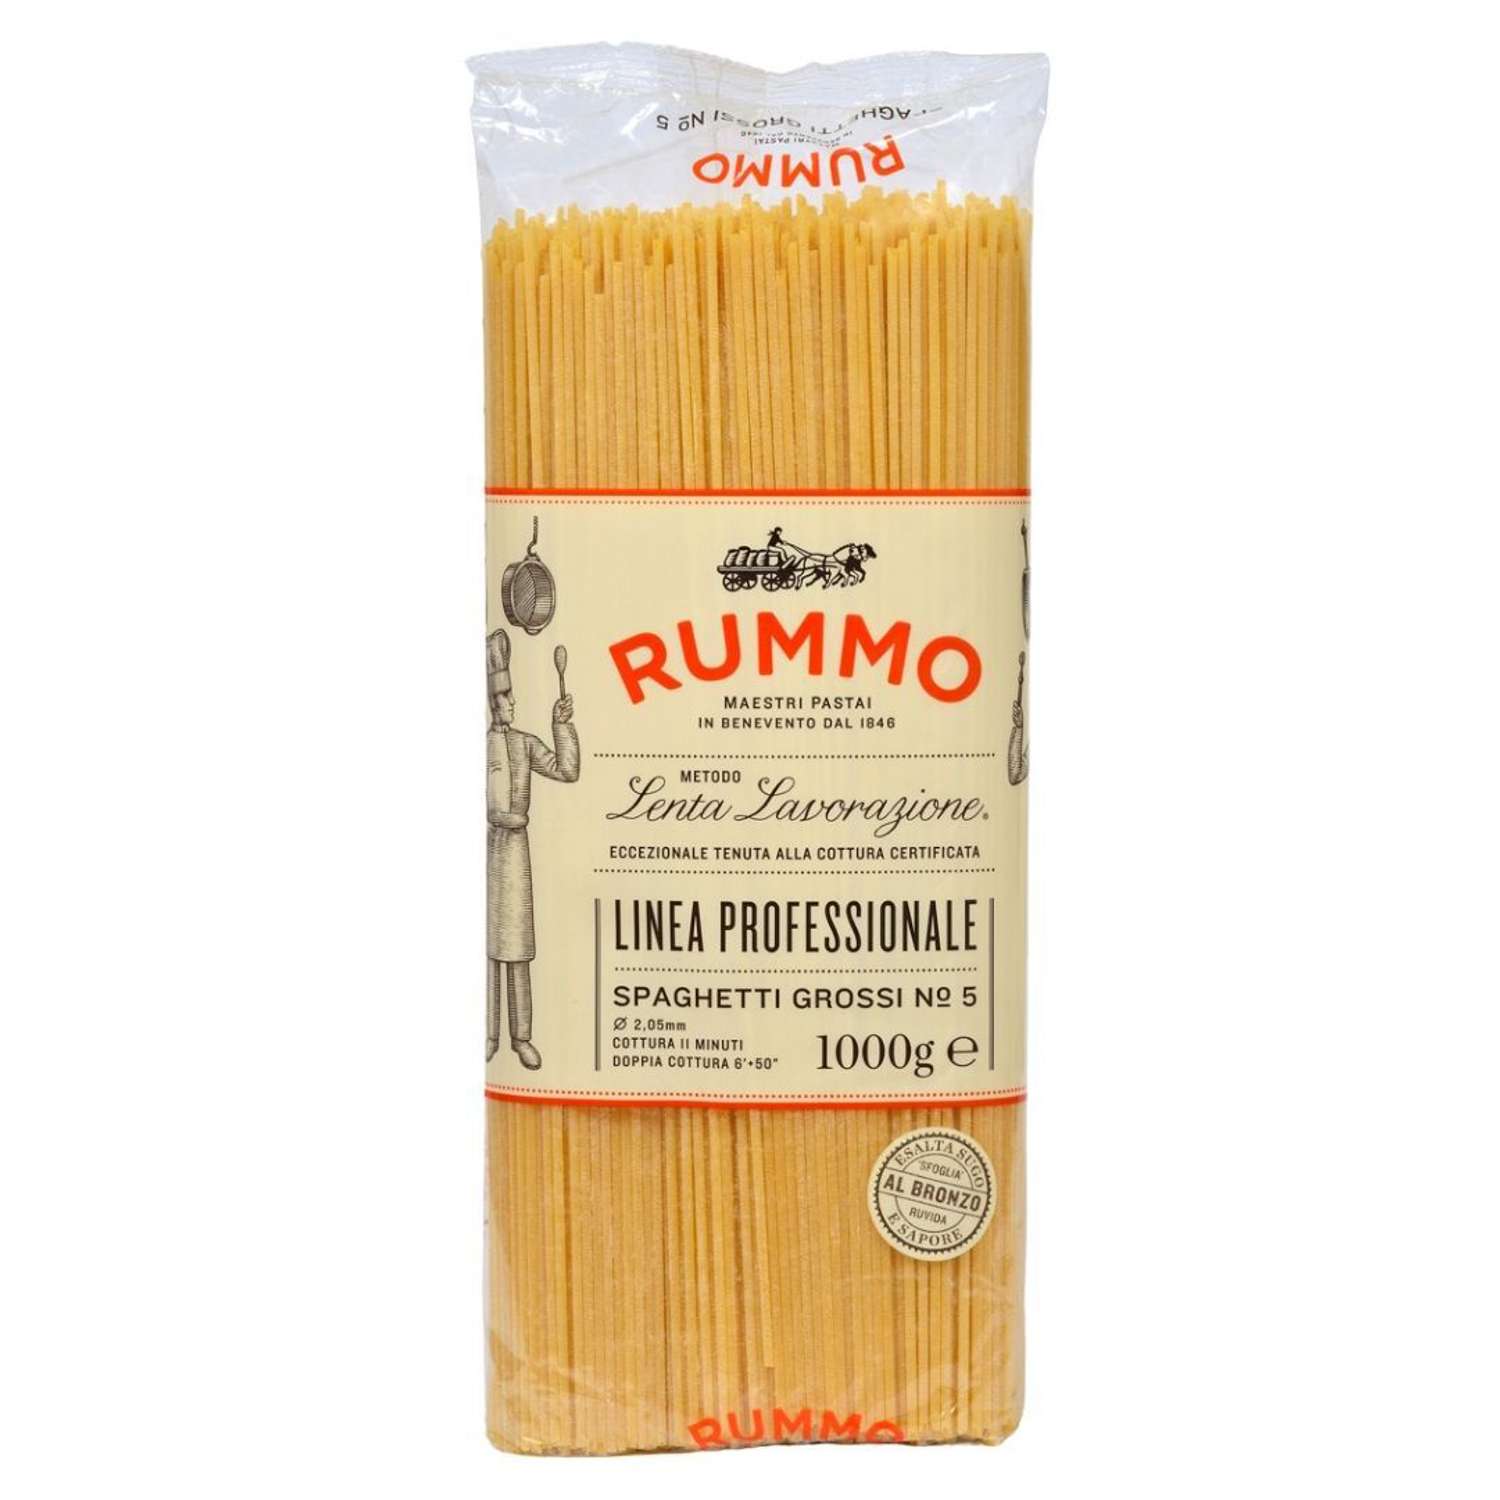 Макароны Rummo итальянская классическая паста Спагетти гросси №5 1000 г - фото 1